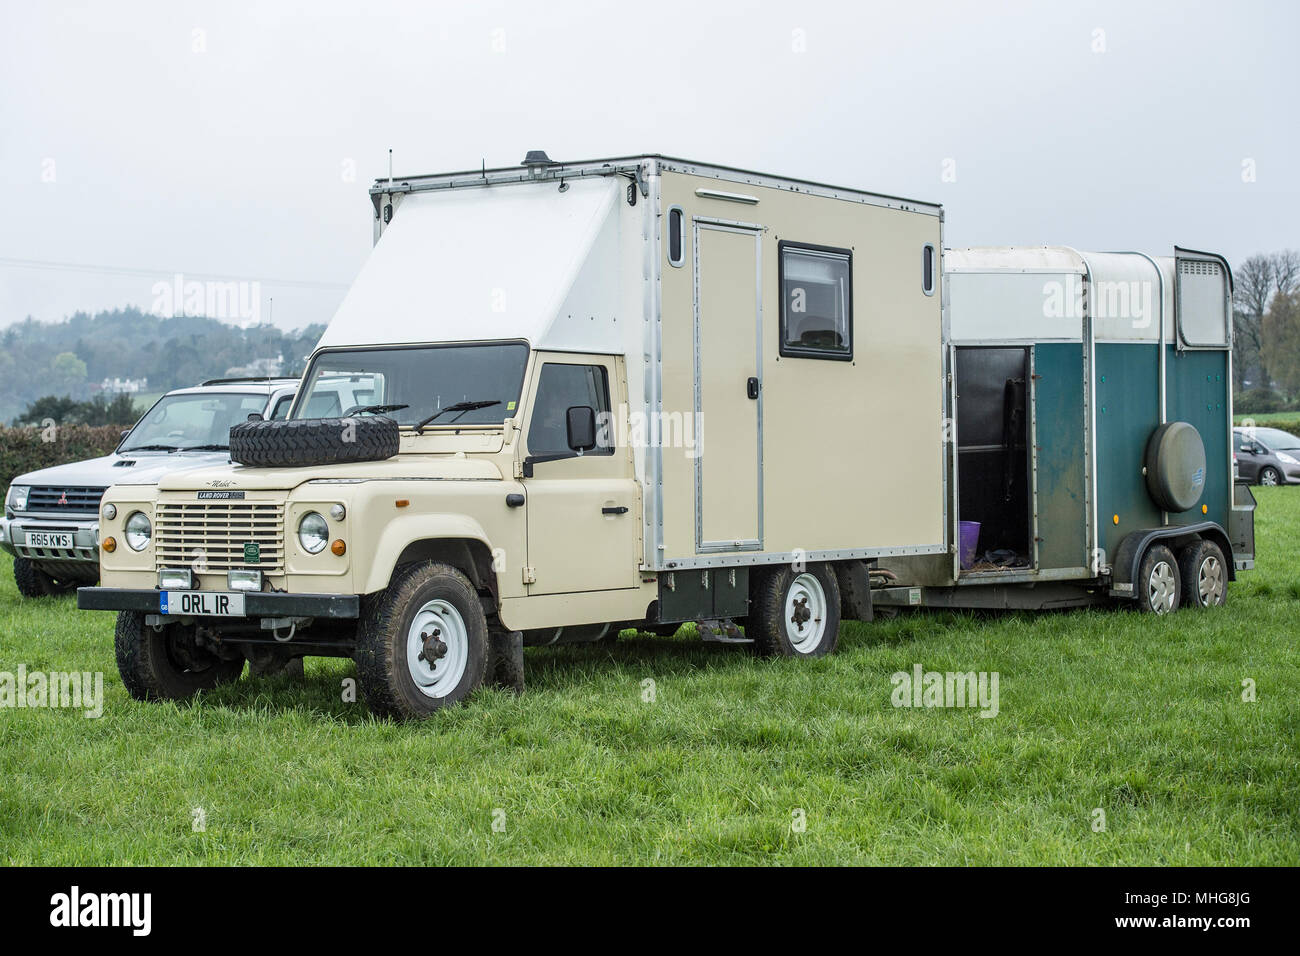 Esta Volkswagen Camper Bus se ha convertido en una caravana trailer